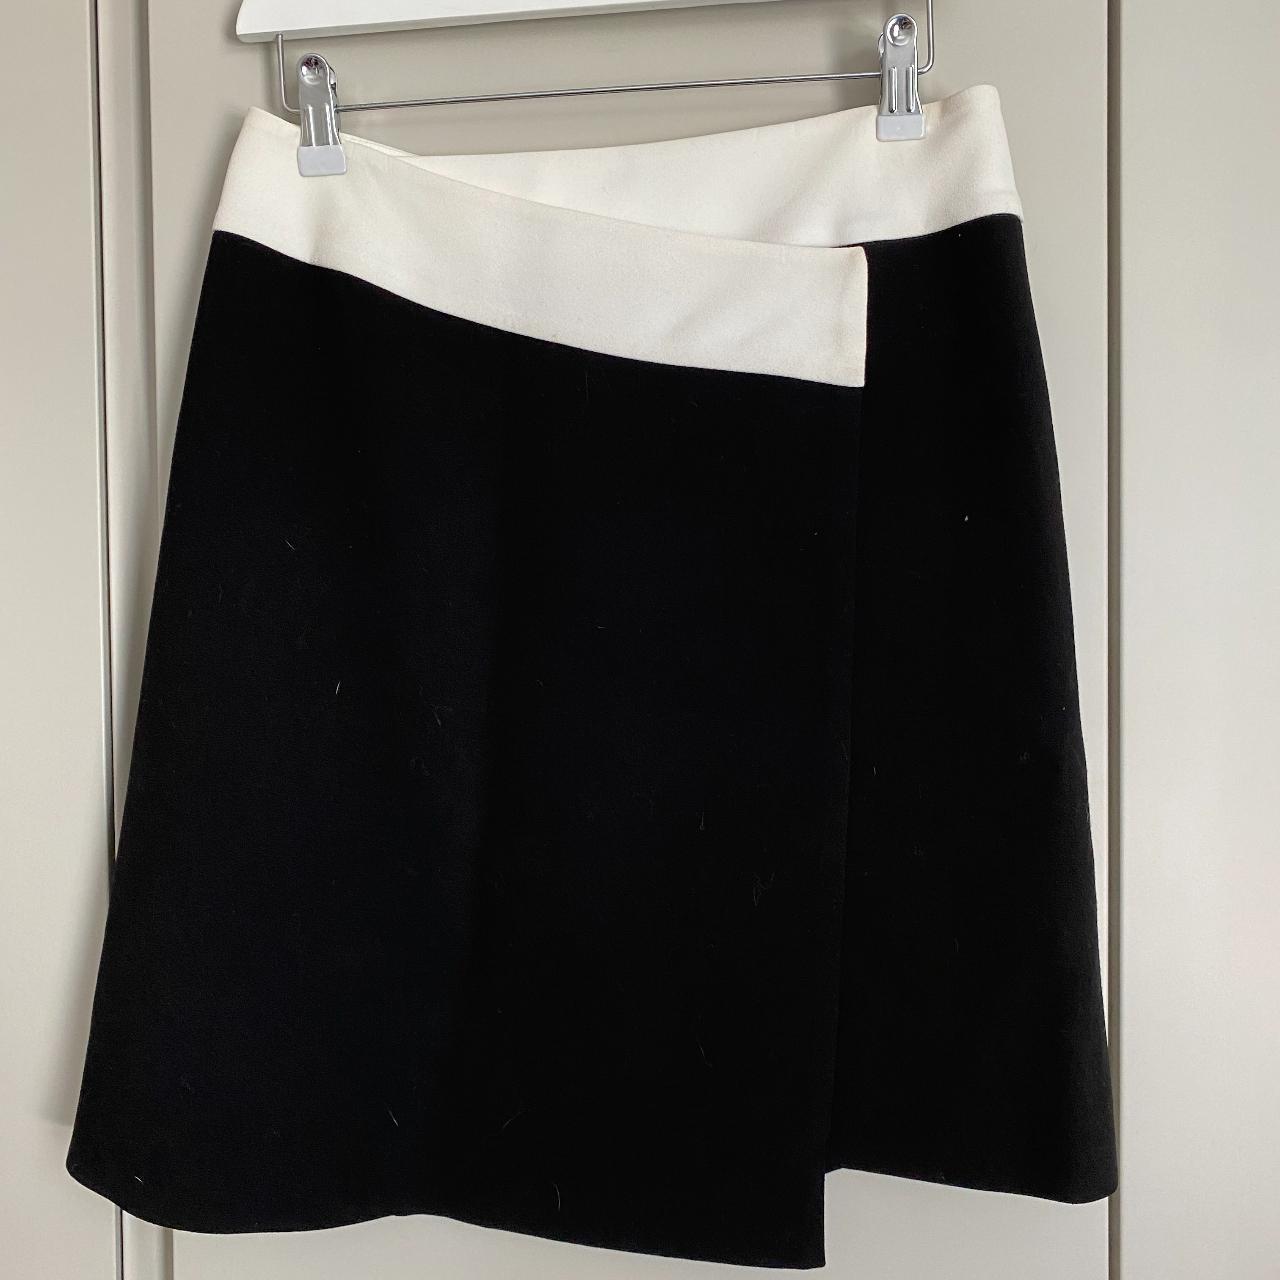 Joseph Black and White mini Skirt Size EU 38 / UK 10 - Depop